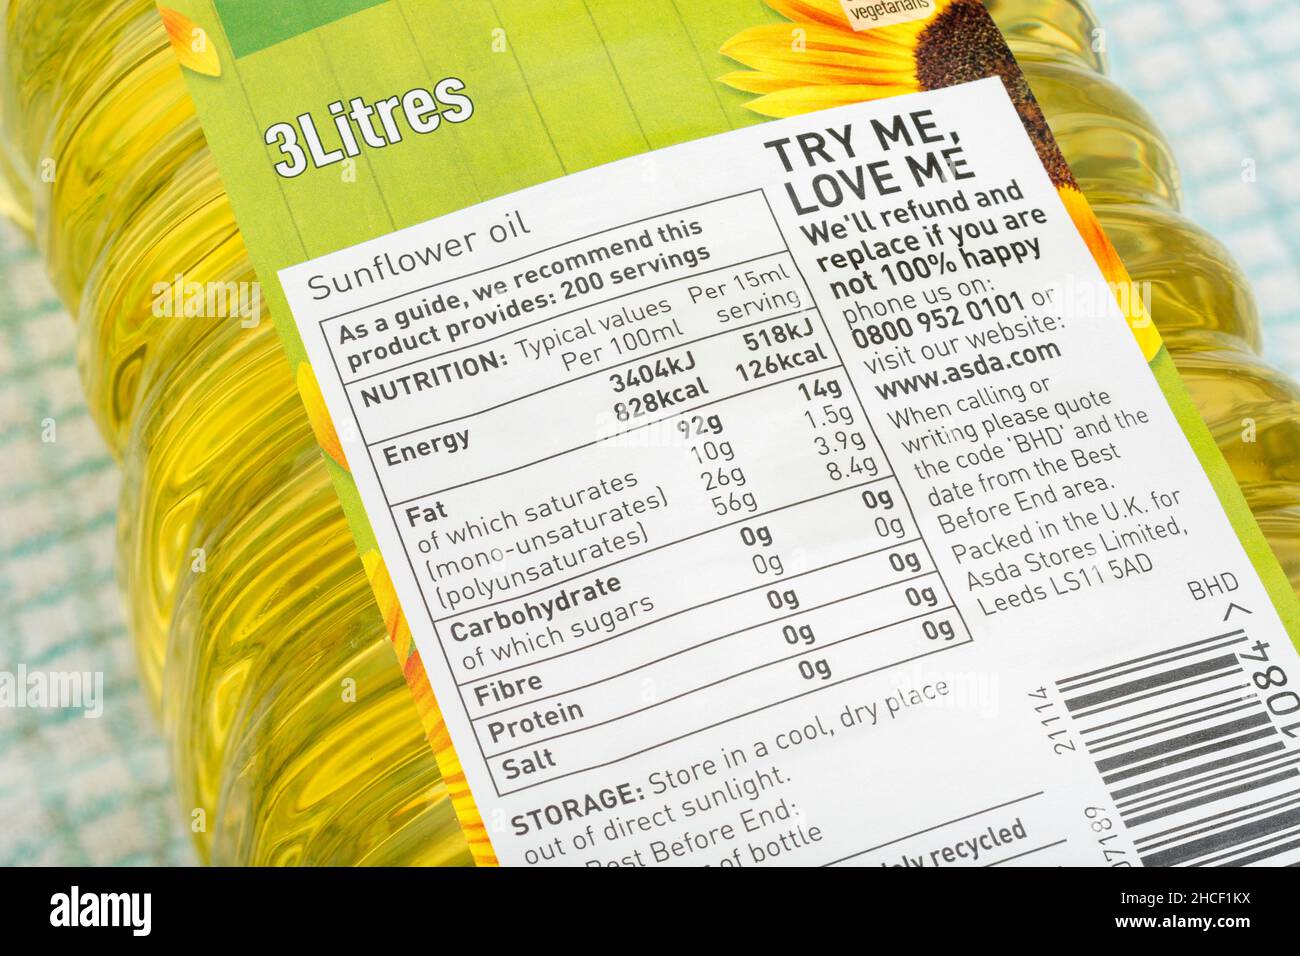 Gros plan de l'étiquette de nutrition alimentaire sur une bouteille en plastique d'huile de tournesol propre à l'ASDA de 3 litres.Pour les emballages alimentaires, les normes alimentaires et les informations sur les régimes alimentaires au Royaume-Uni. Banque D'Images